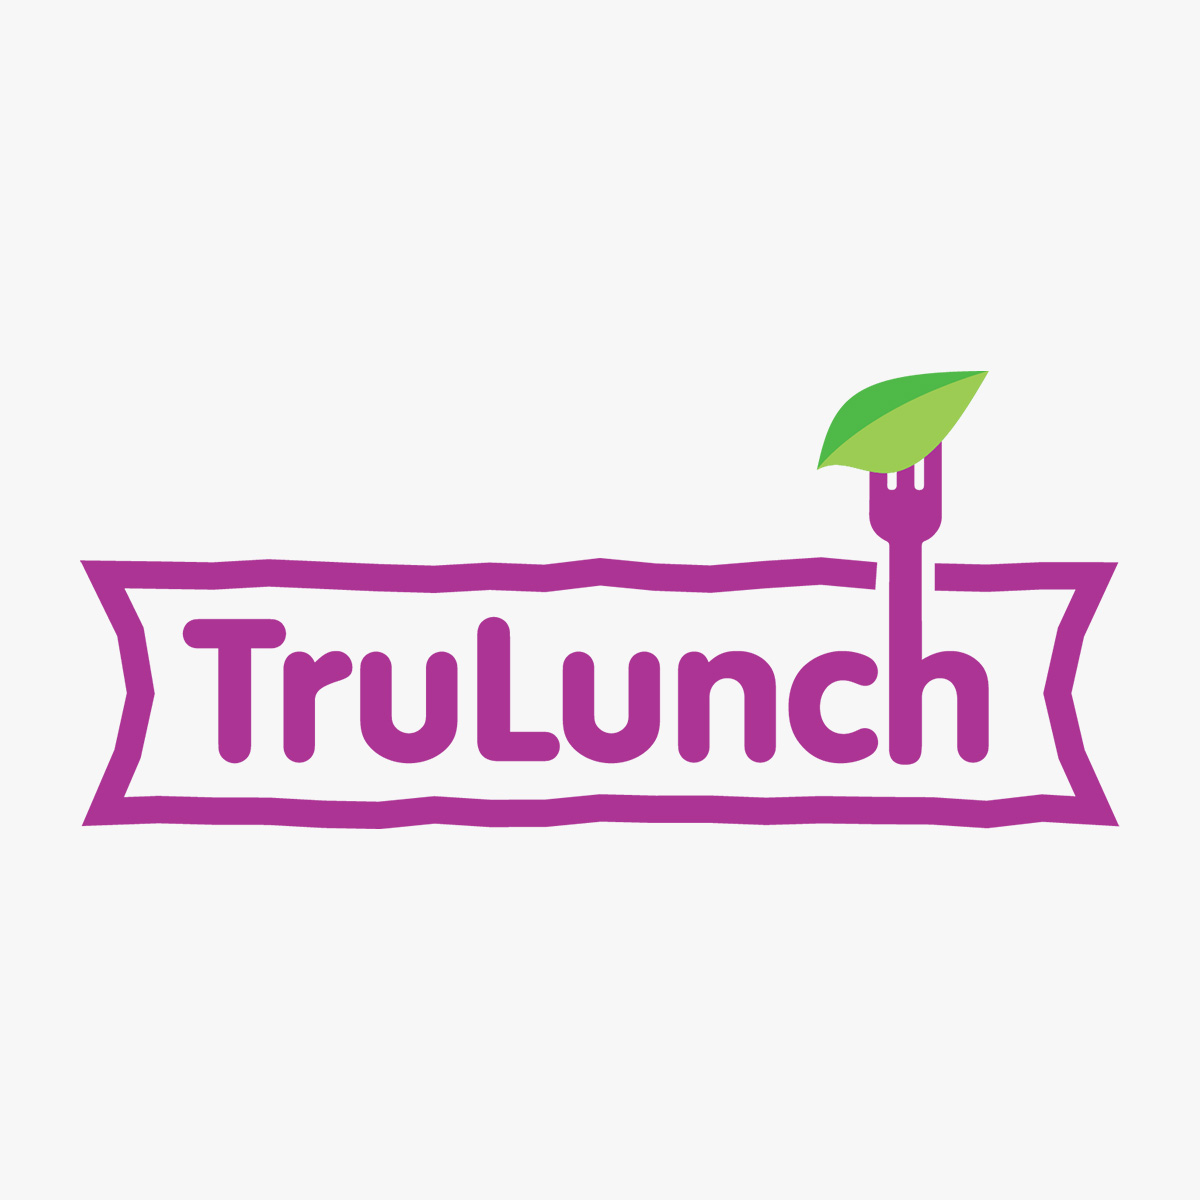 TruLunch